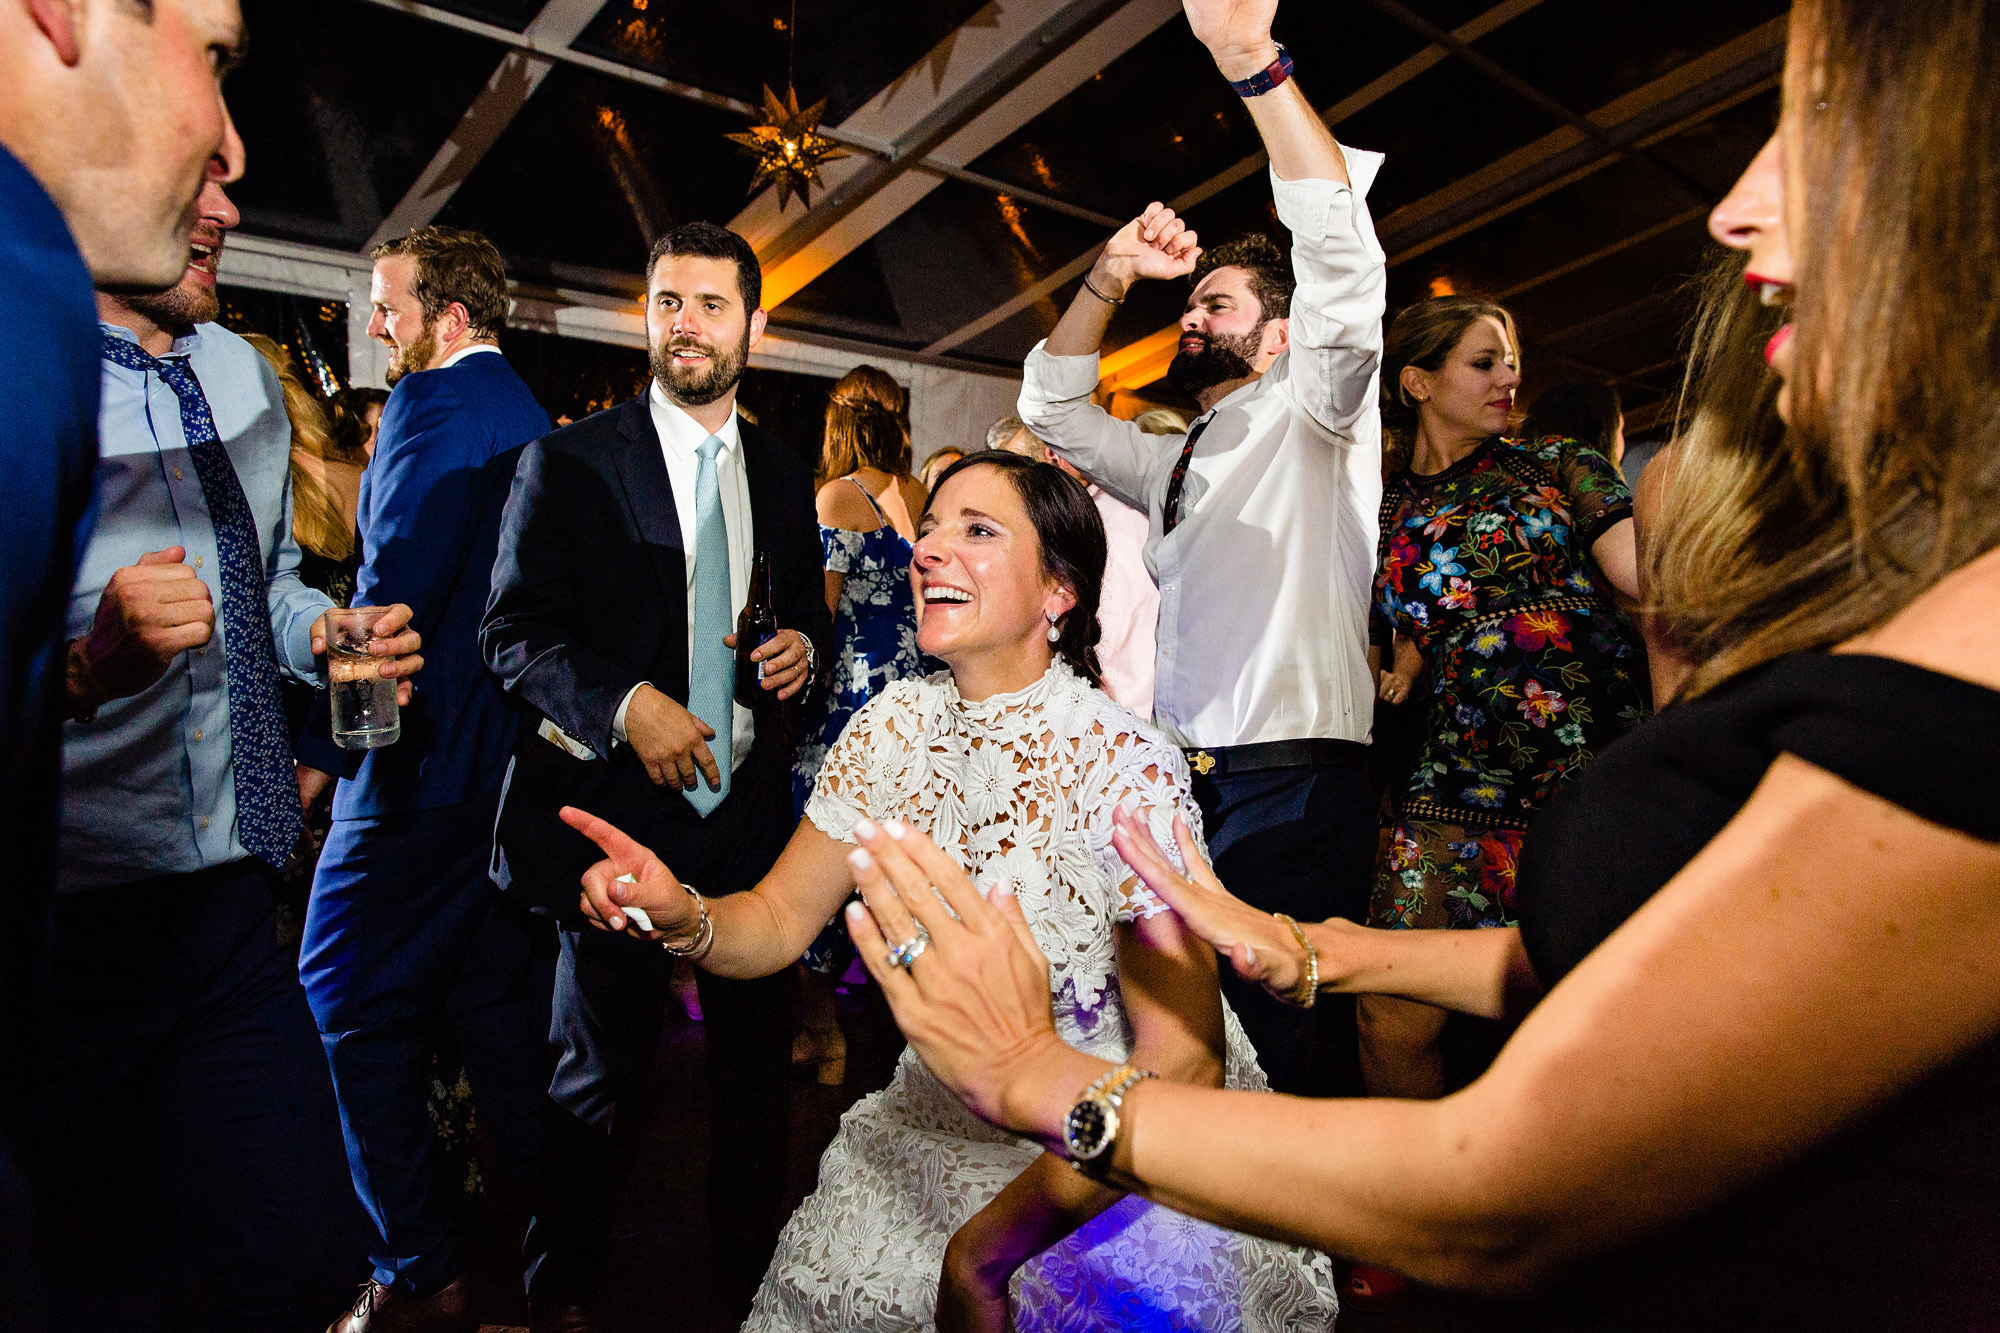 A joyful dance floor at a Blue Hill Country Club wedding